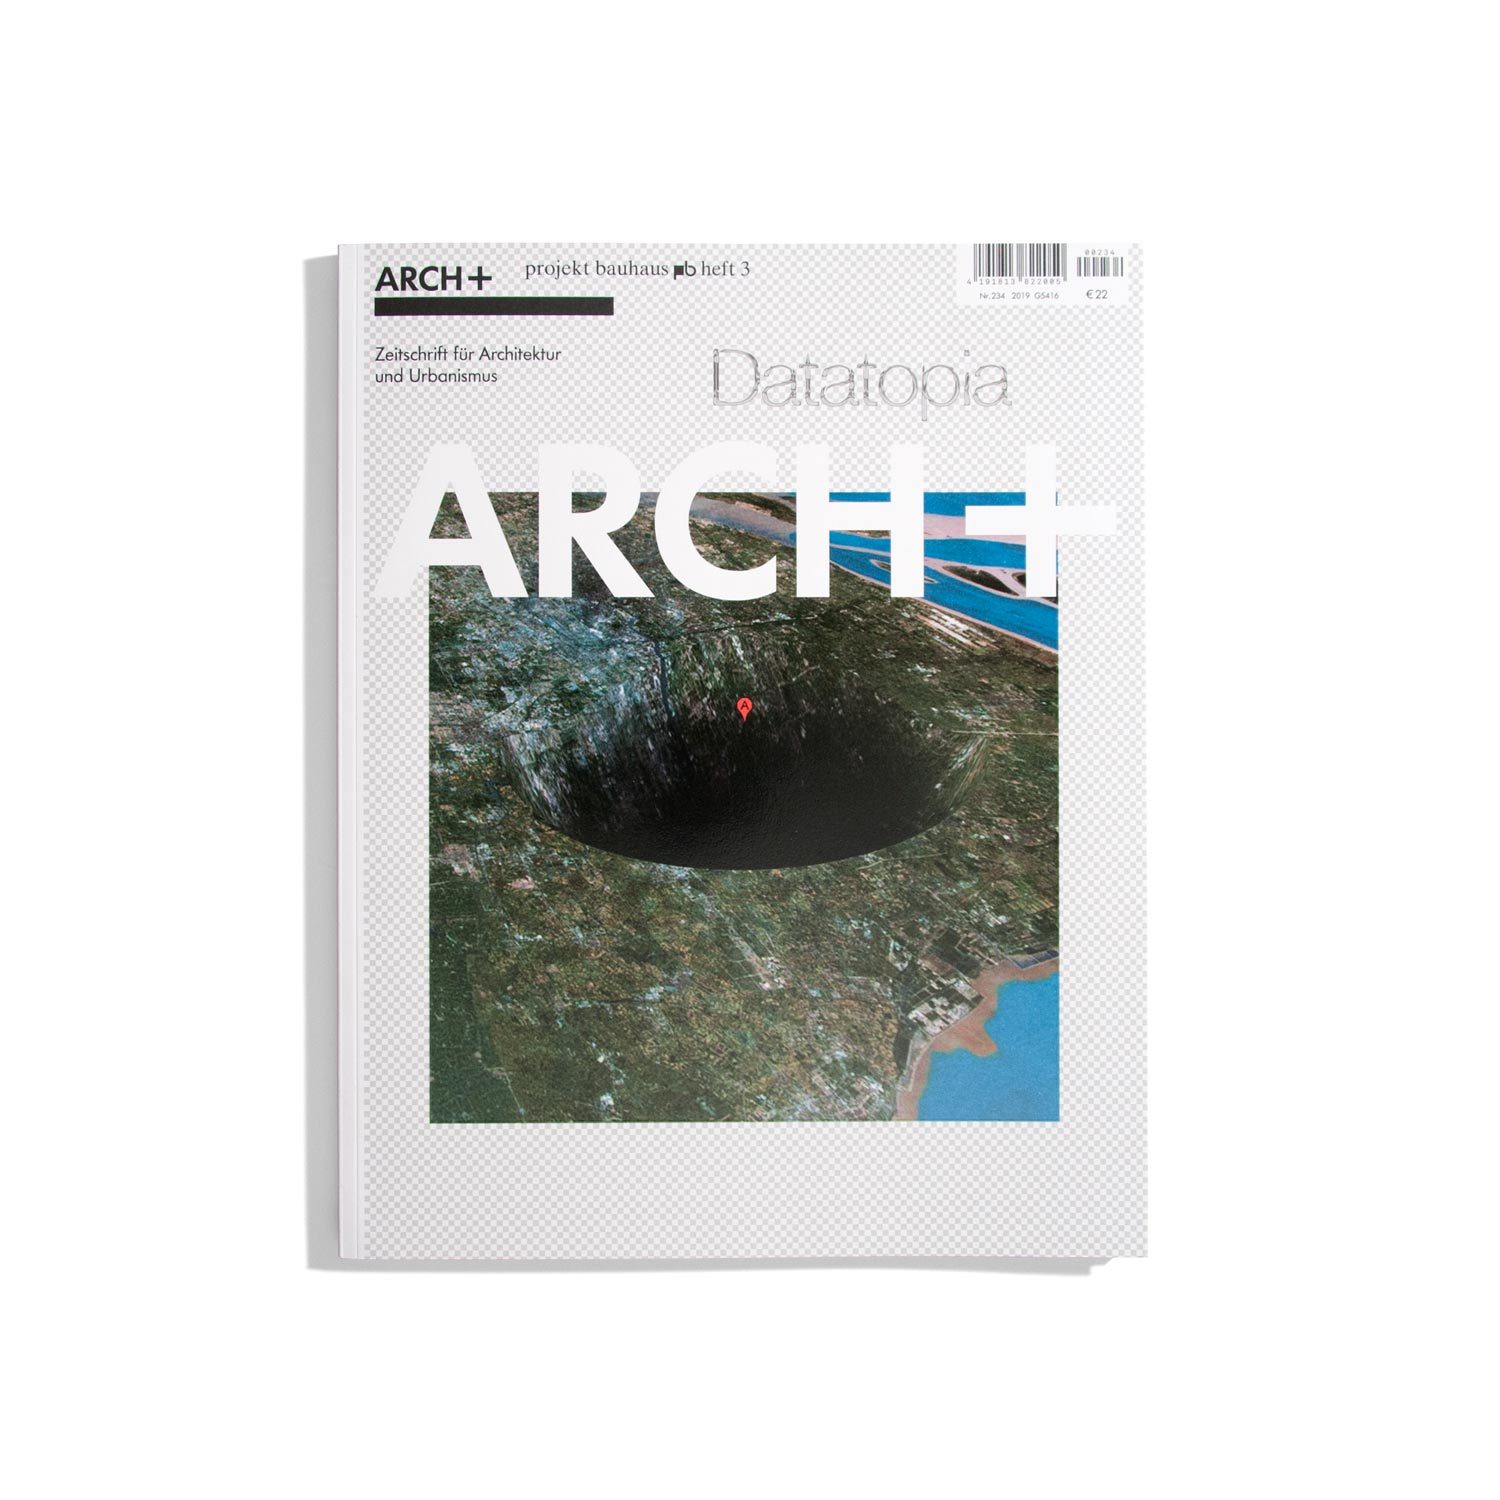 Archplus Datatopia